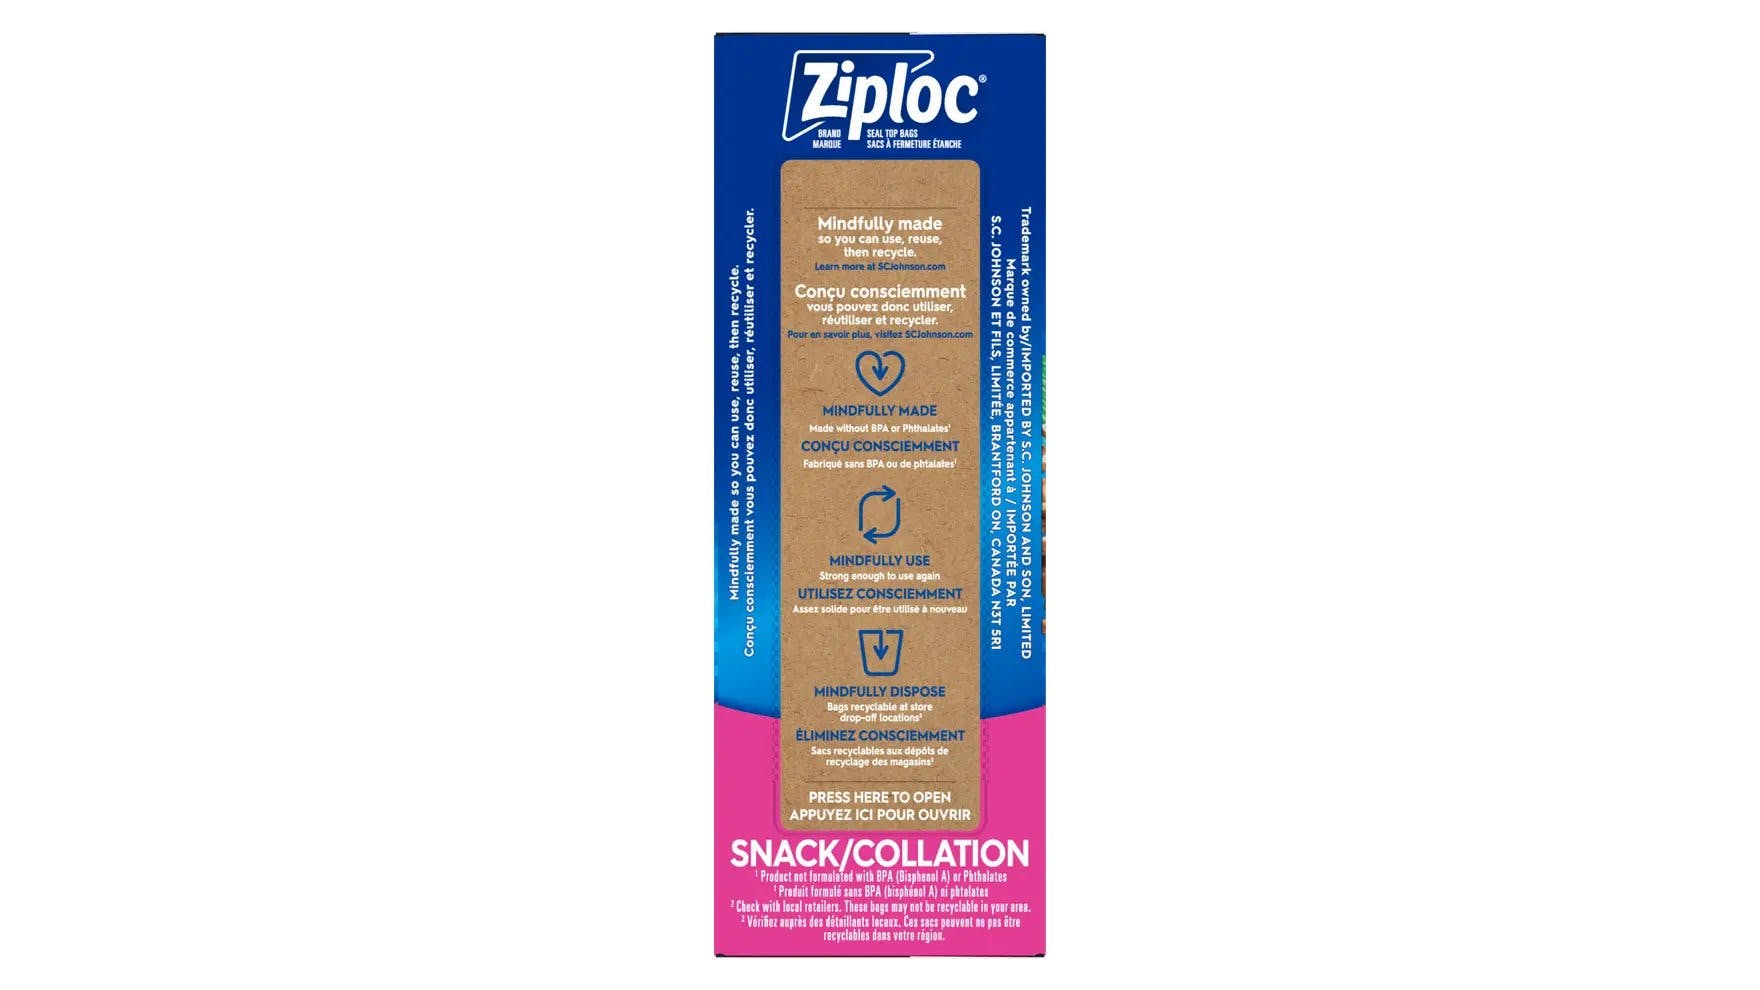 Top of Ziploc snack bags box